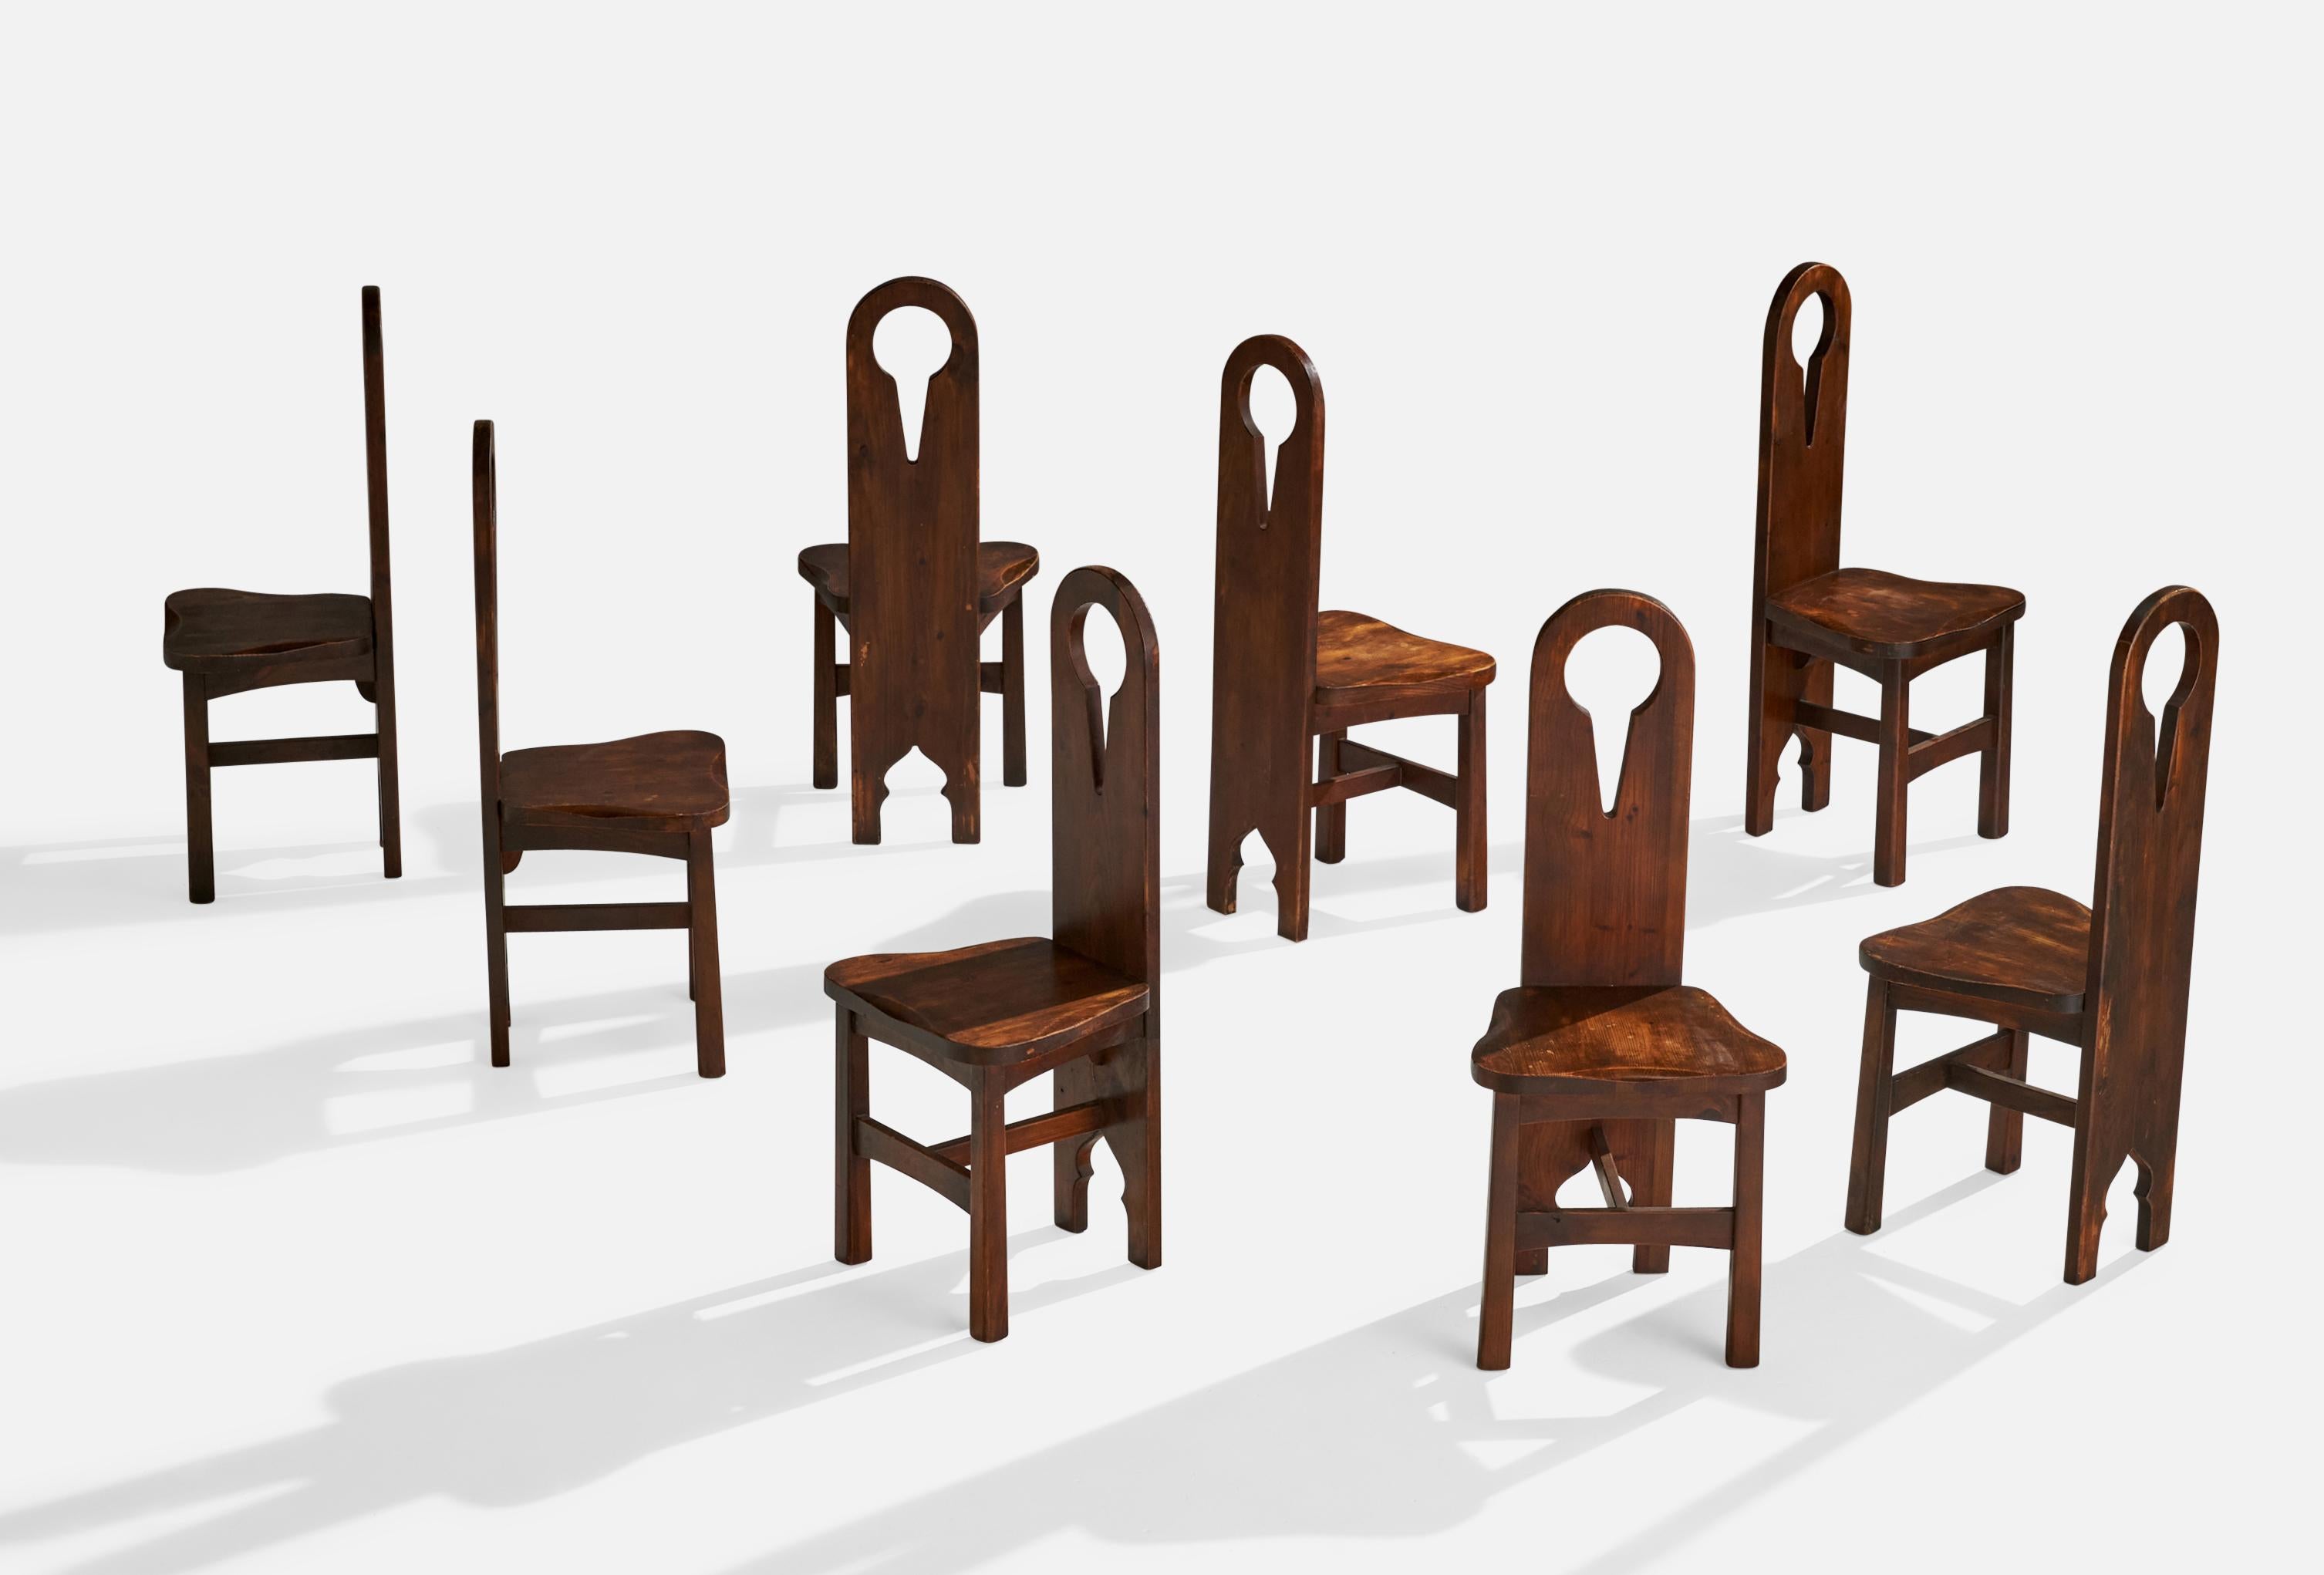 Ensemble de 8 chaises de salle à manger en pin teinté, conçues et produites aux Etats-Unis, vers 1910.

hauteur du siège 17.75